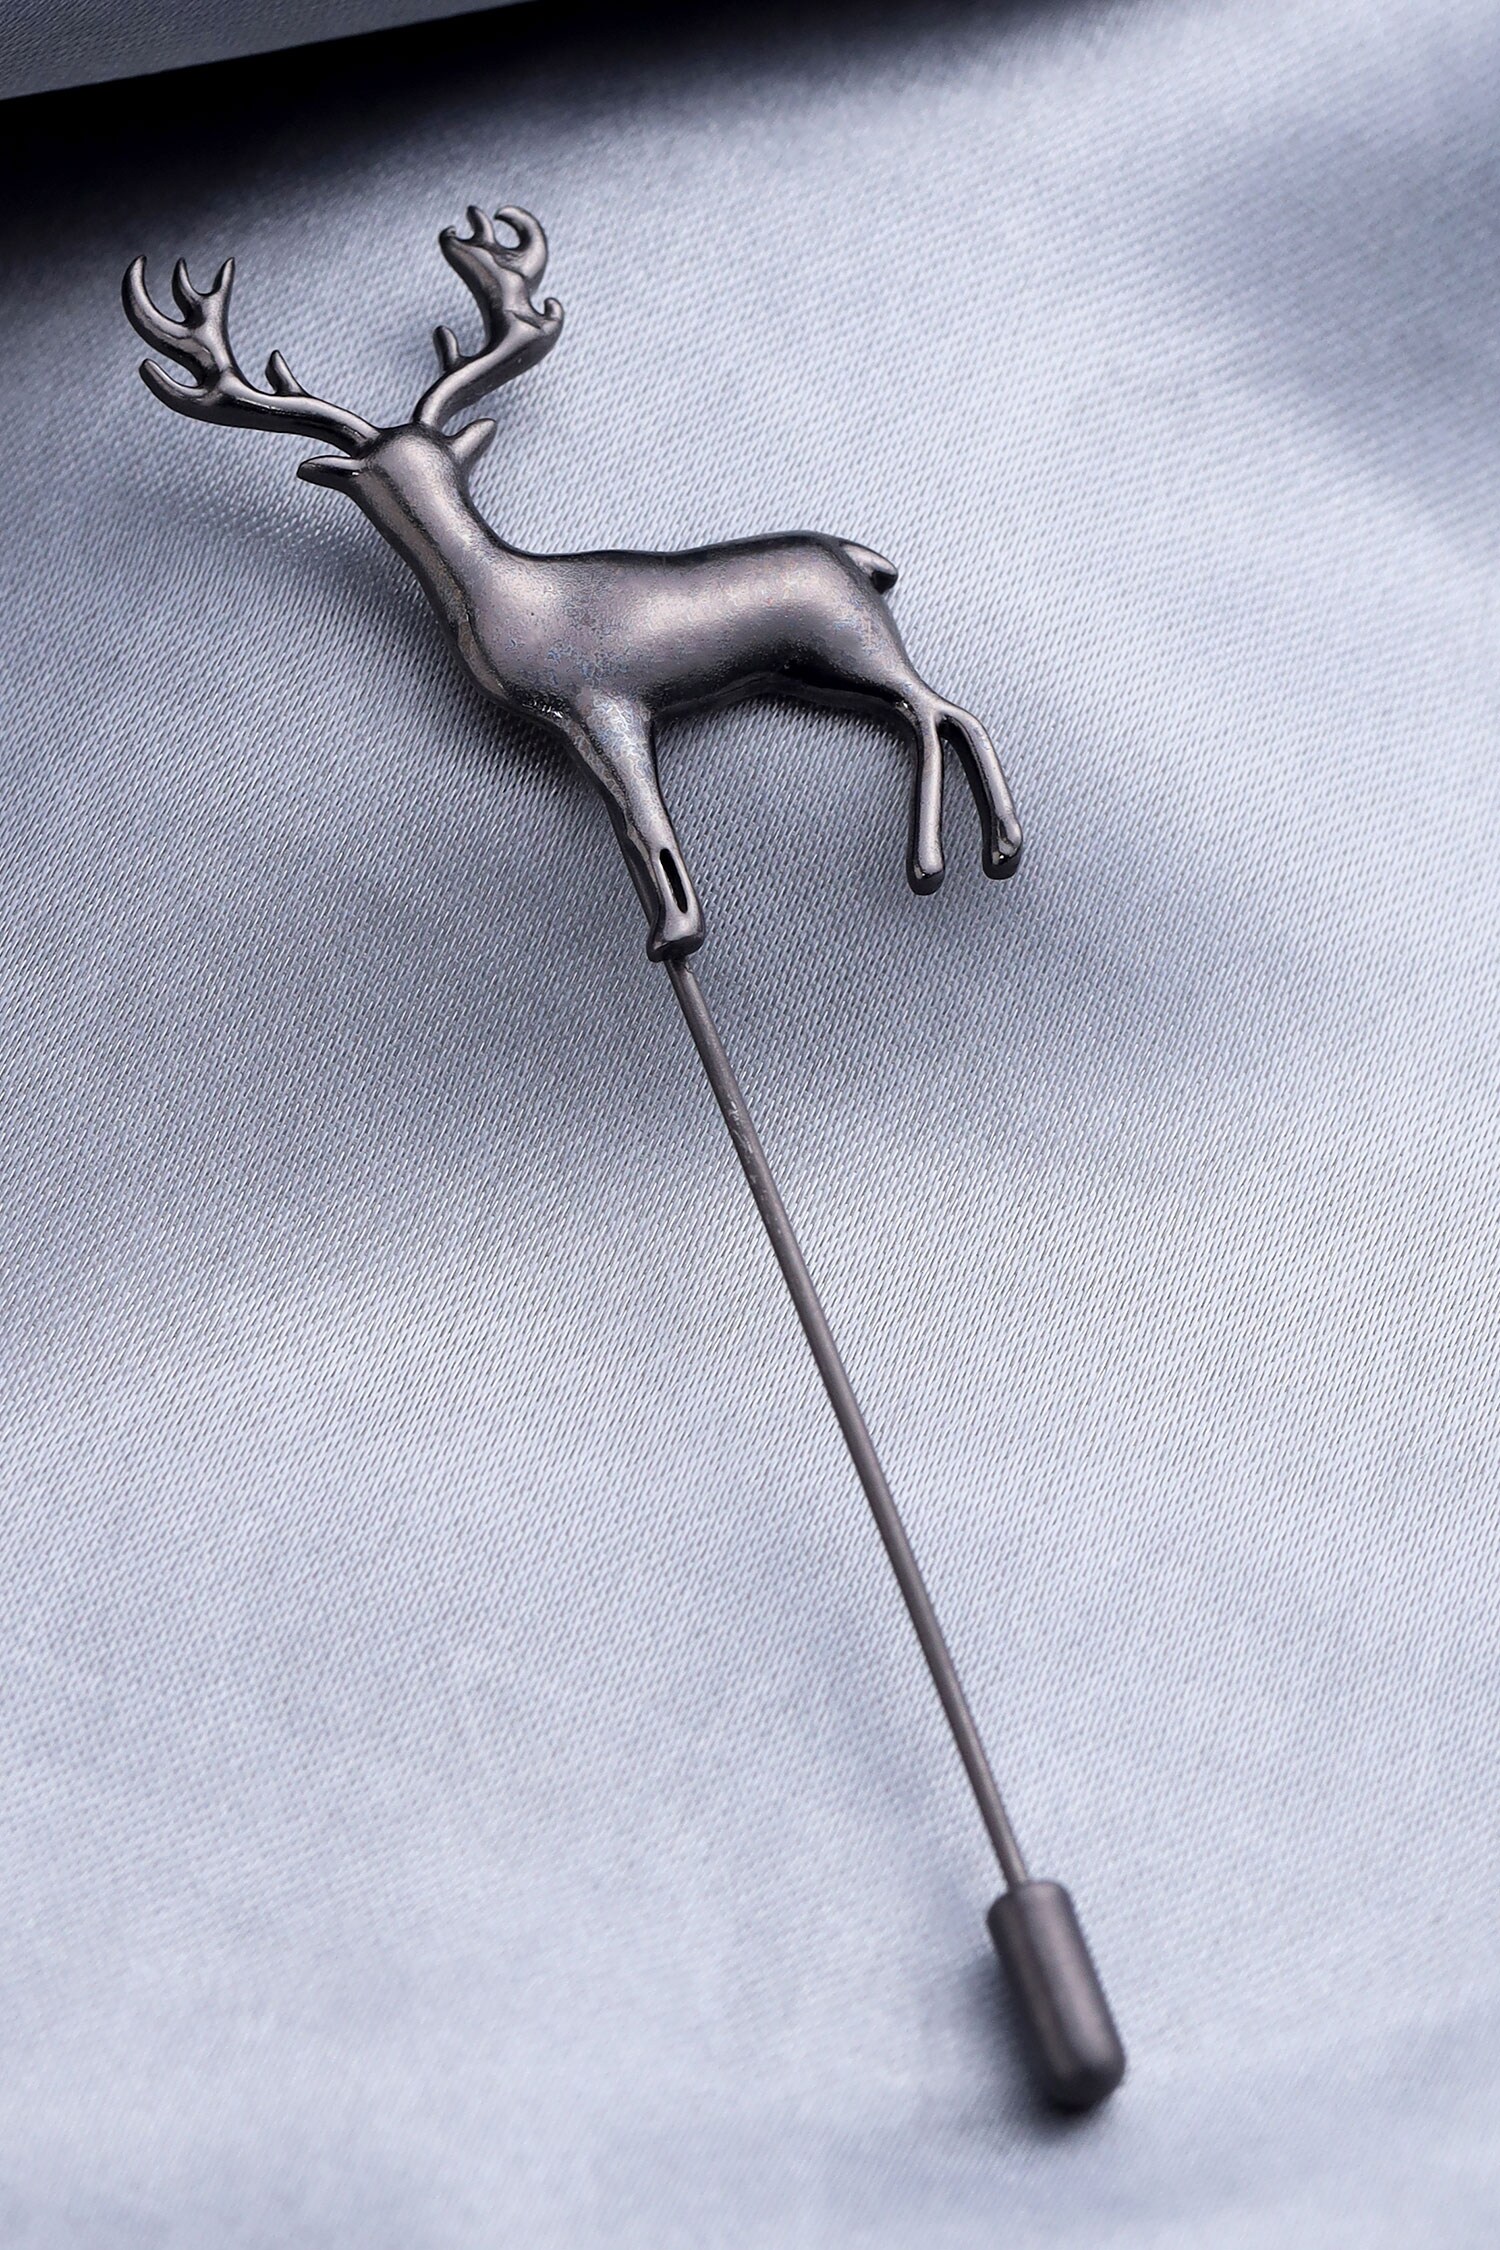 Cosa Nostraa Black Daring Deer Carved Lapel Pin